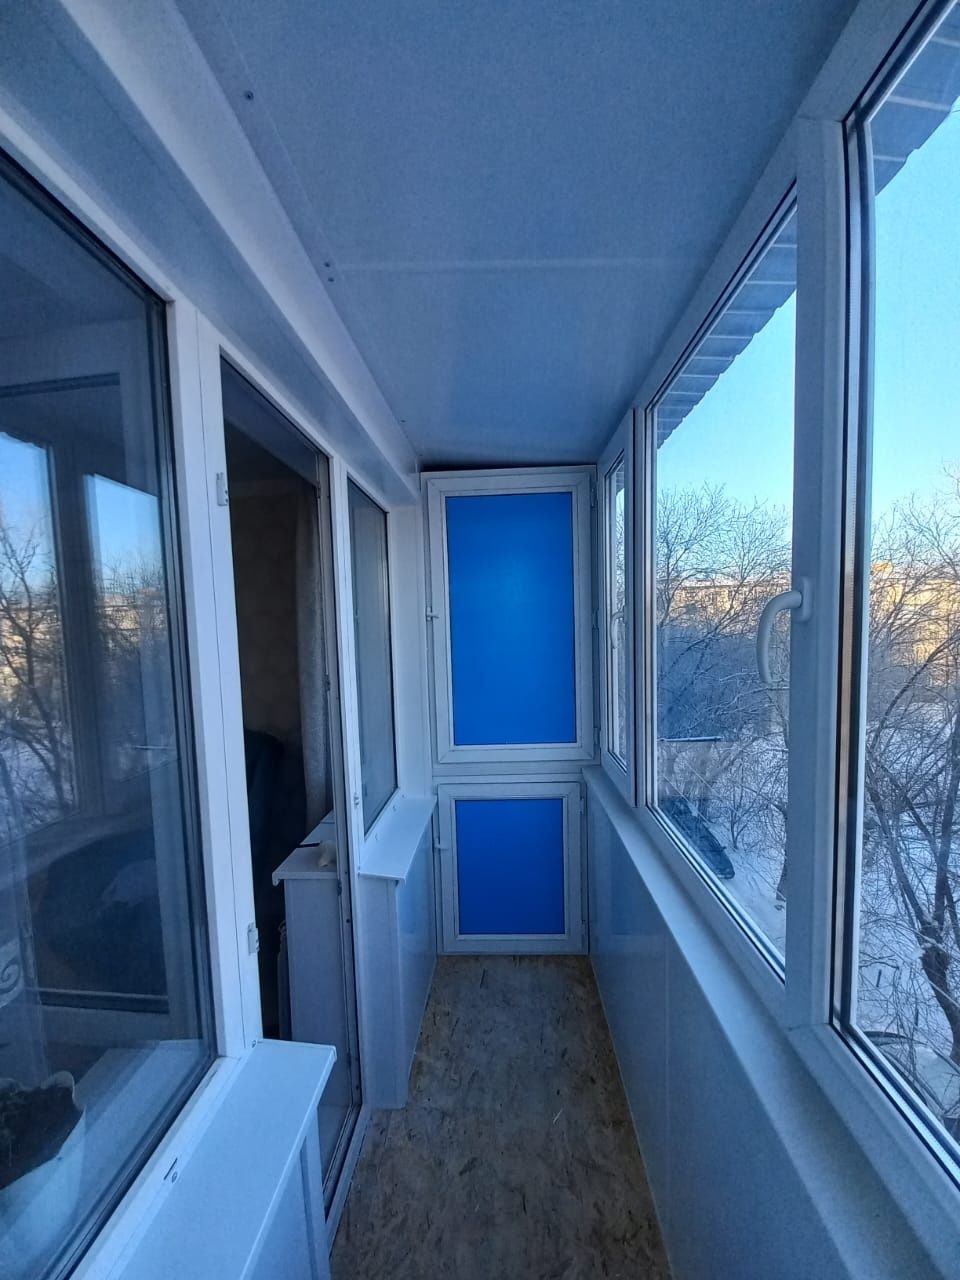 Установка металлопластиковые окна,остекление балкона,лоджи,заделка отк